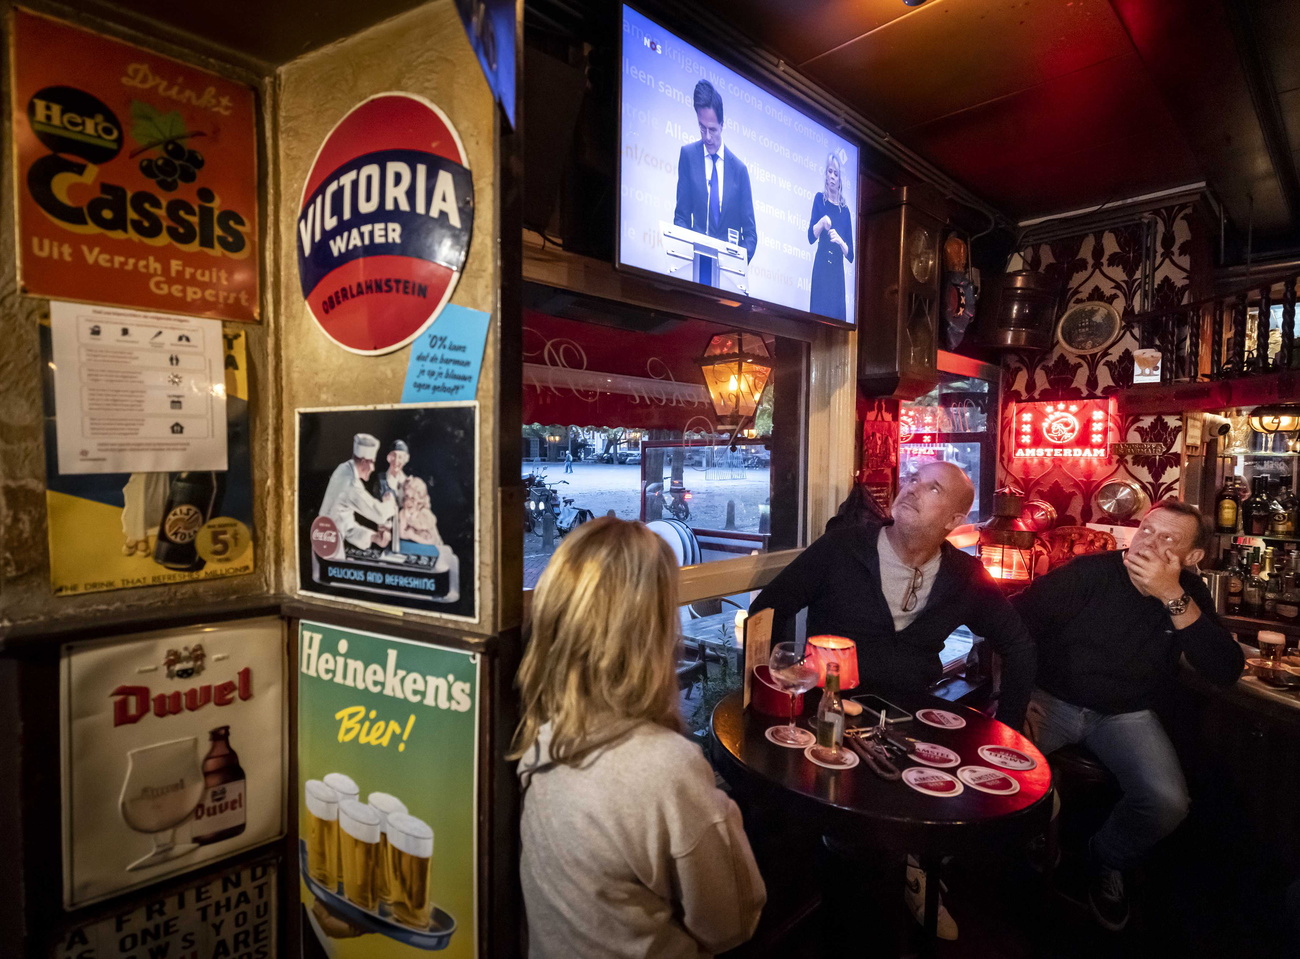 Una donna e due uomini al tavolo di un pub guardano due politici che annunciano qualcosa in tv